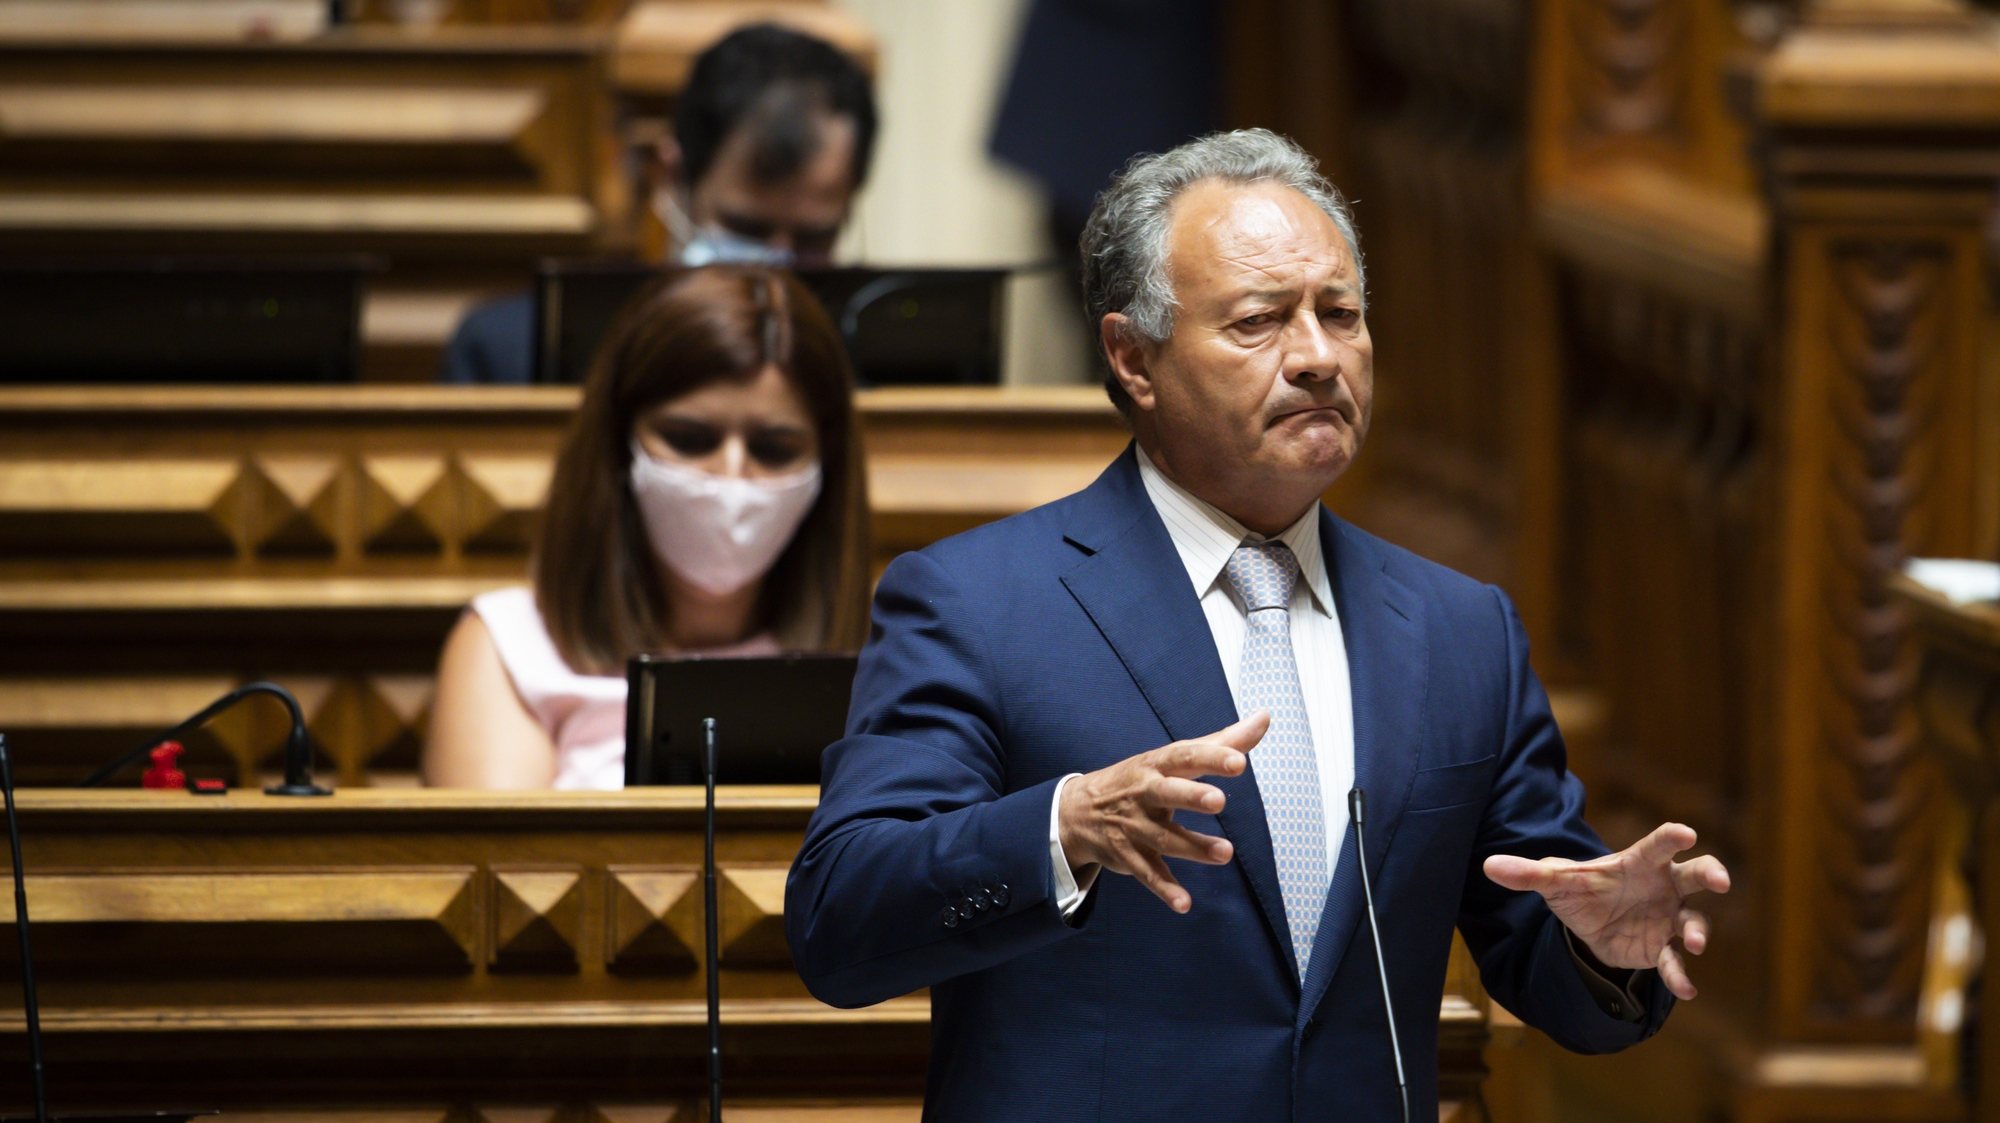 O deputado do Partido Social Democrata (PSD), Adão Silva, usa da palavra durante o debate quinzenal, na Assembleia da República, em Lisboa, 03 de junho de 2020. JOSÉ SENA GOULÃO/LUSA